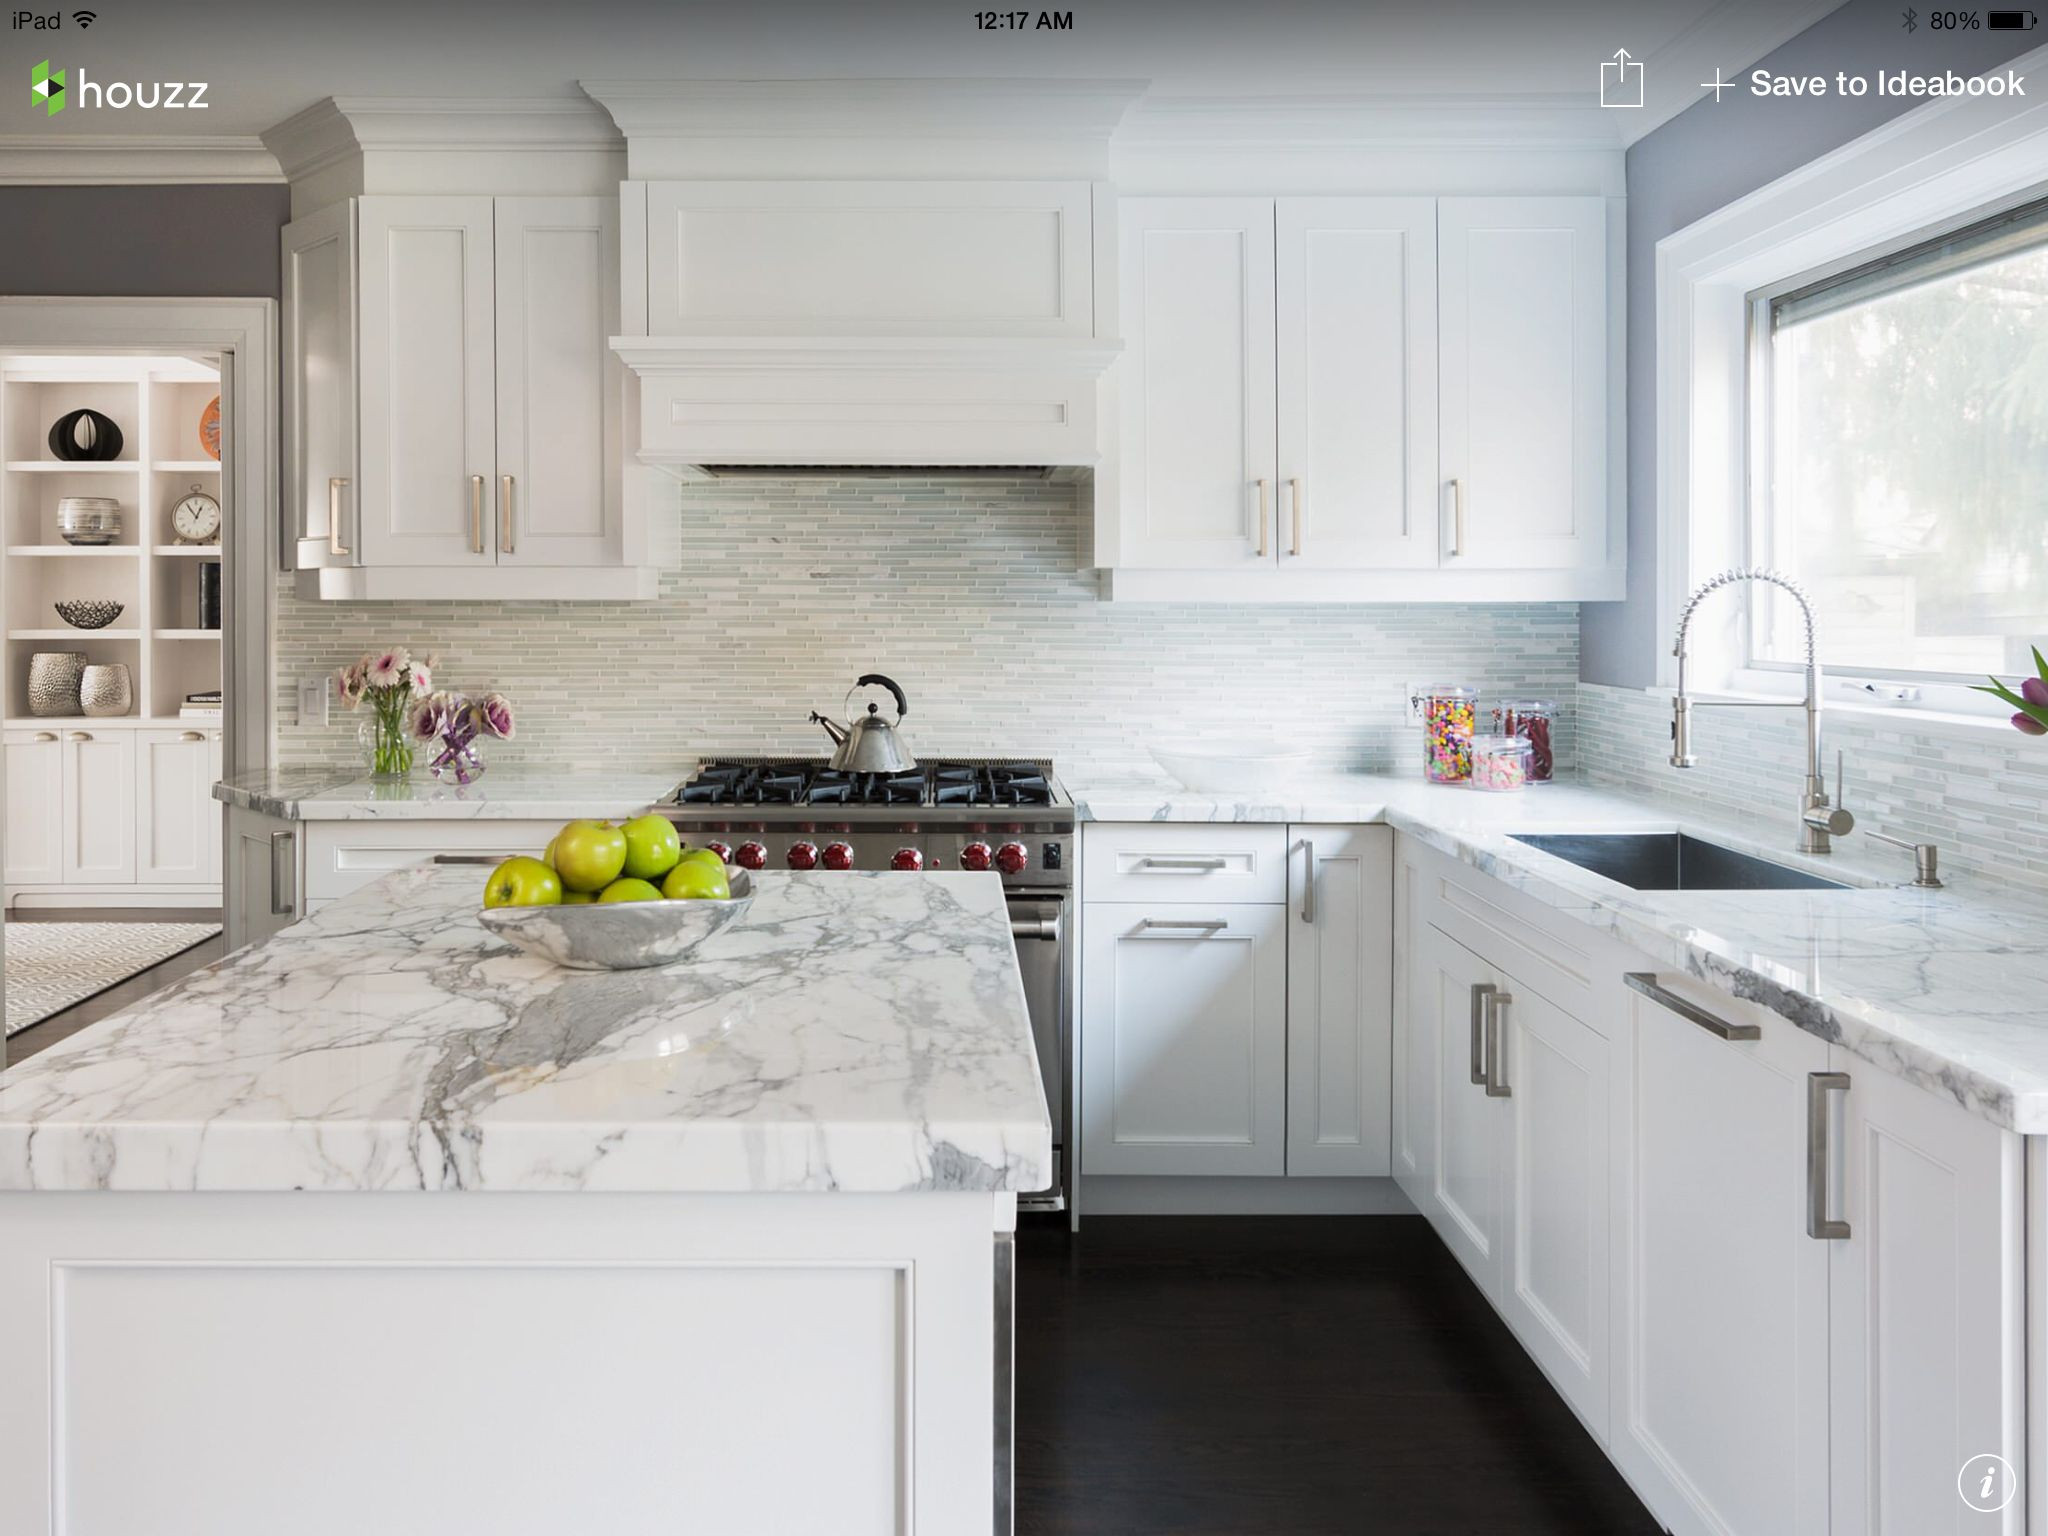 Best ideas about Houzz Kitchen Ideas
. Save or Pin White Kitchen Houzz Kitchen Remodel Now.